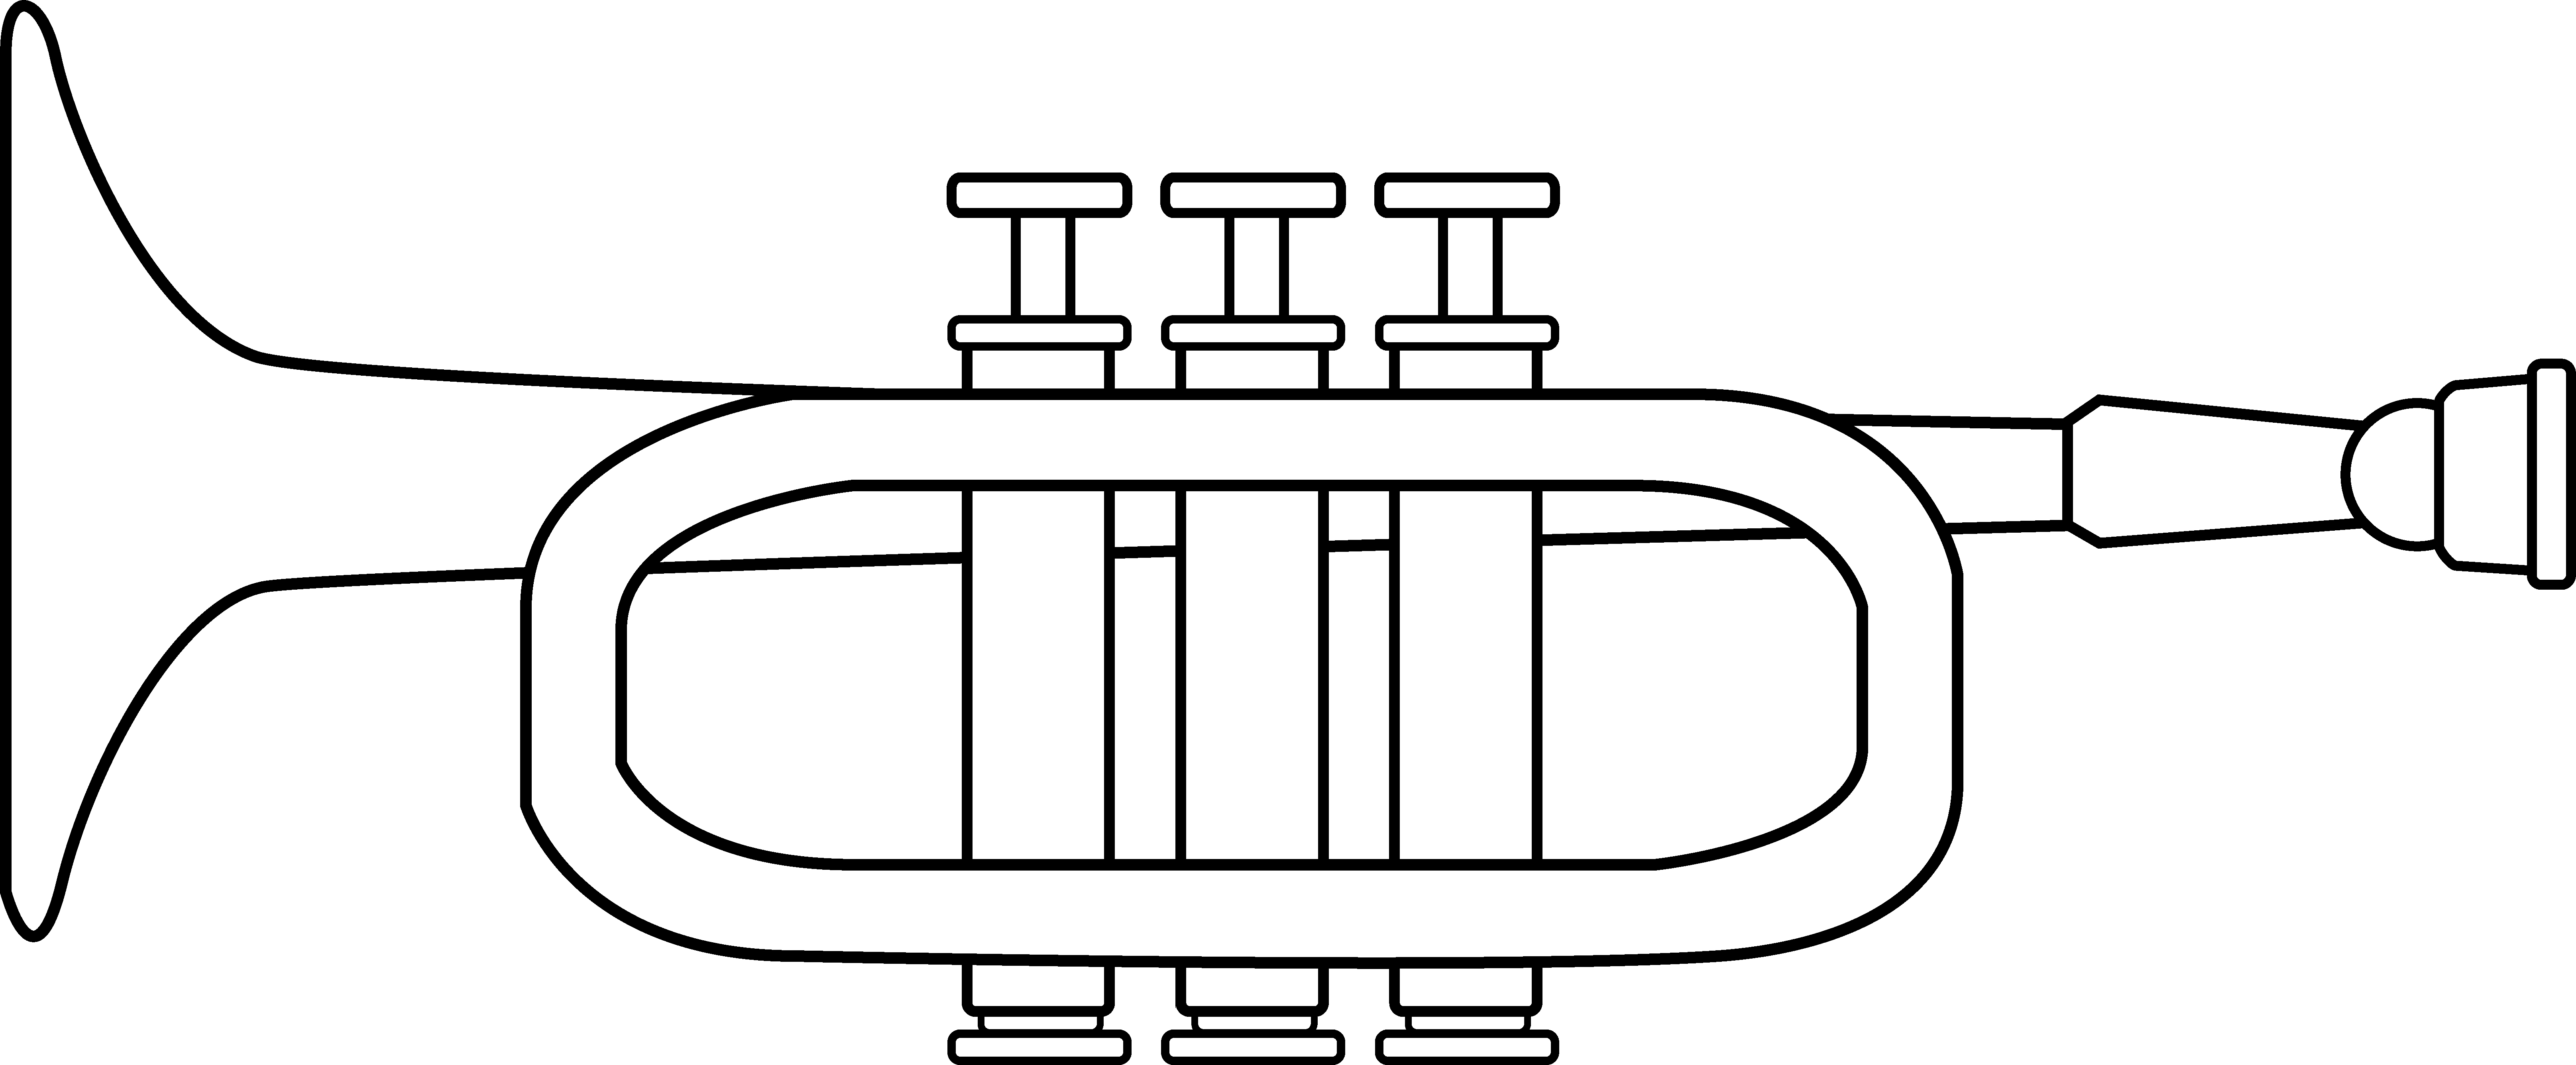 Trumpet Clip Art At Clker Com